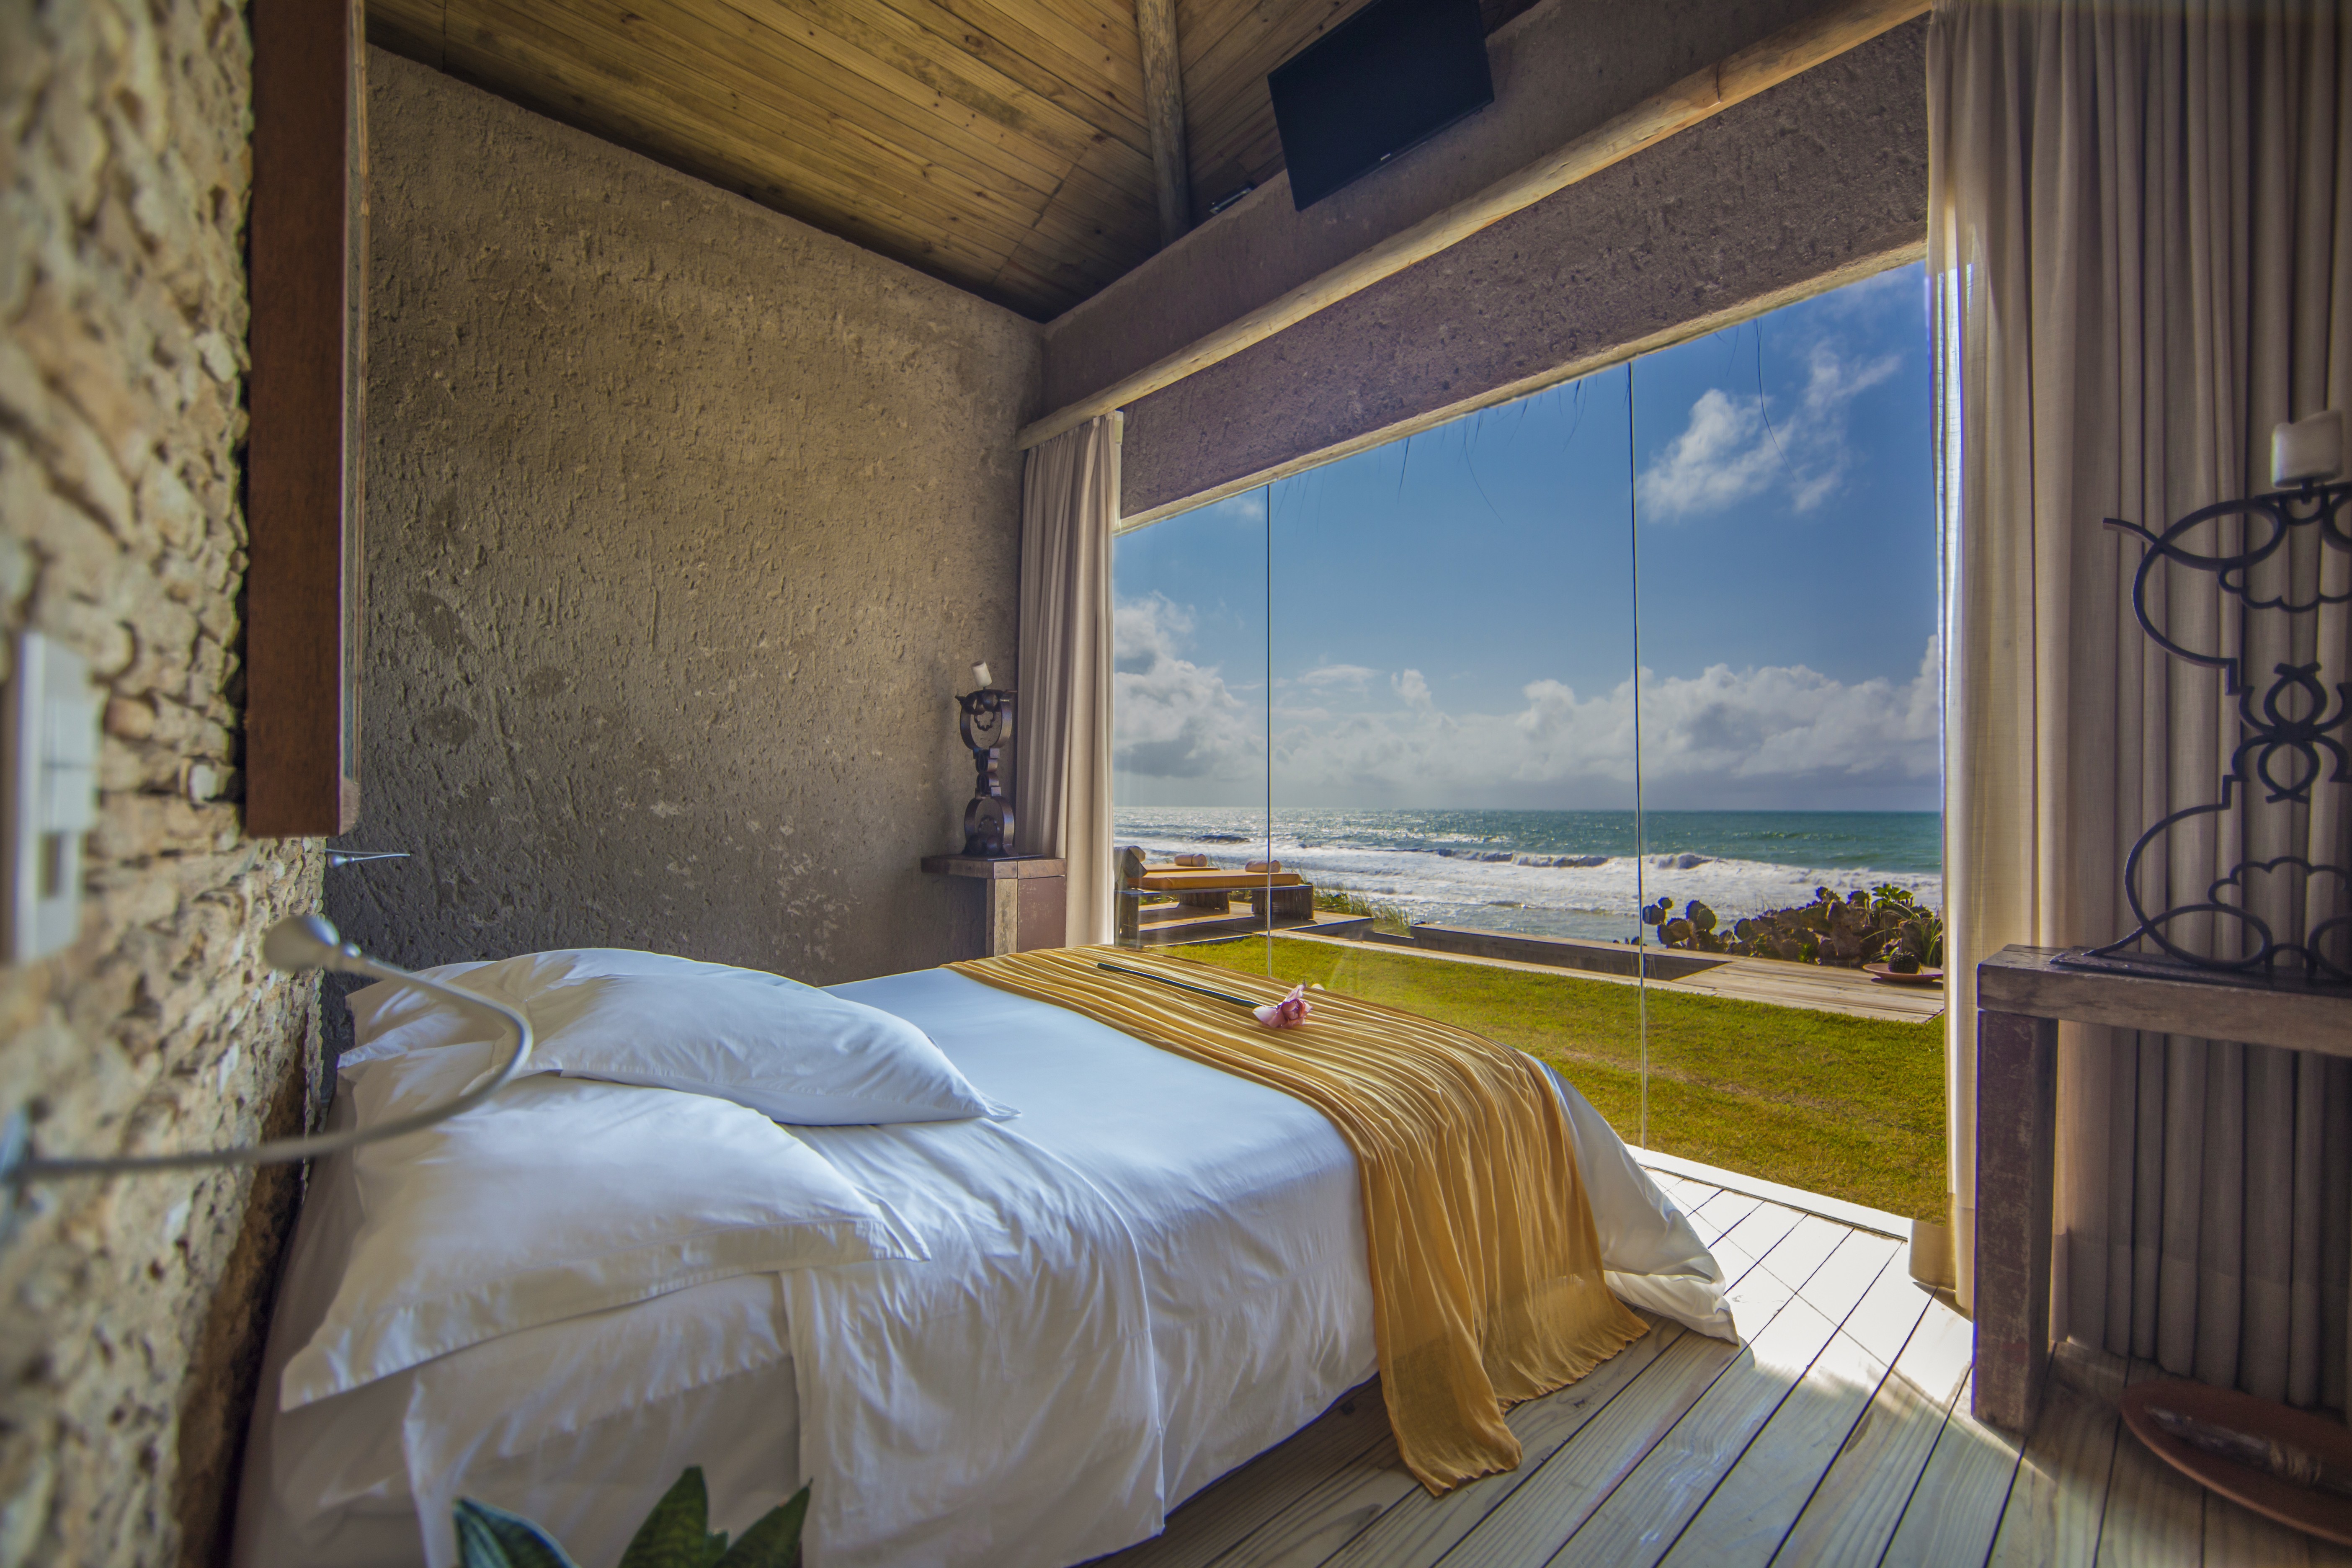 Os hotéis de praia mais lindos do Brasil (Foto: divulgação)